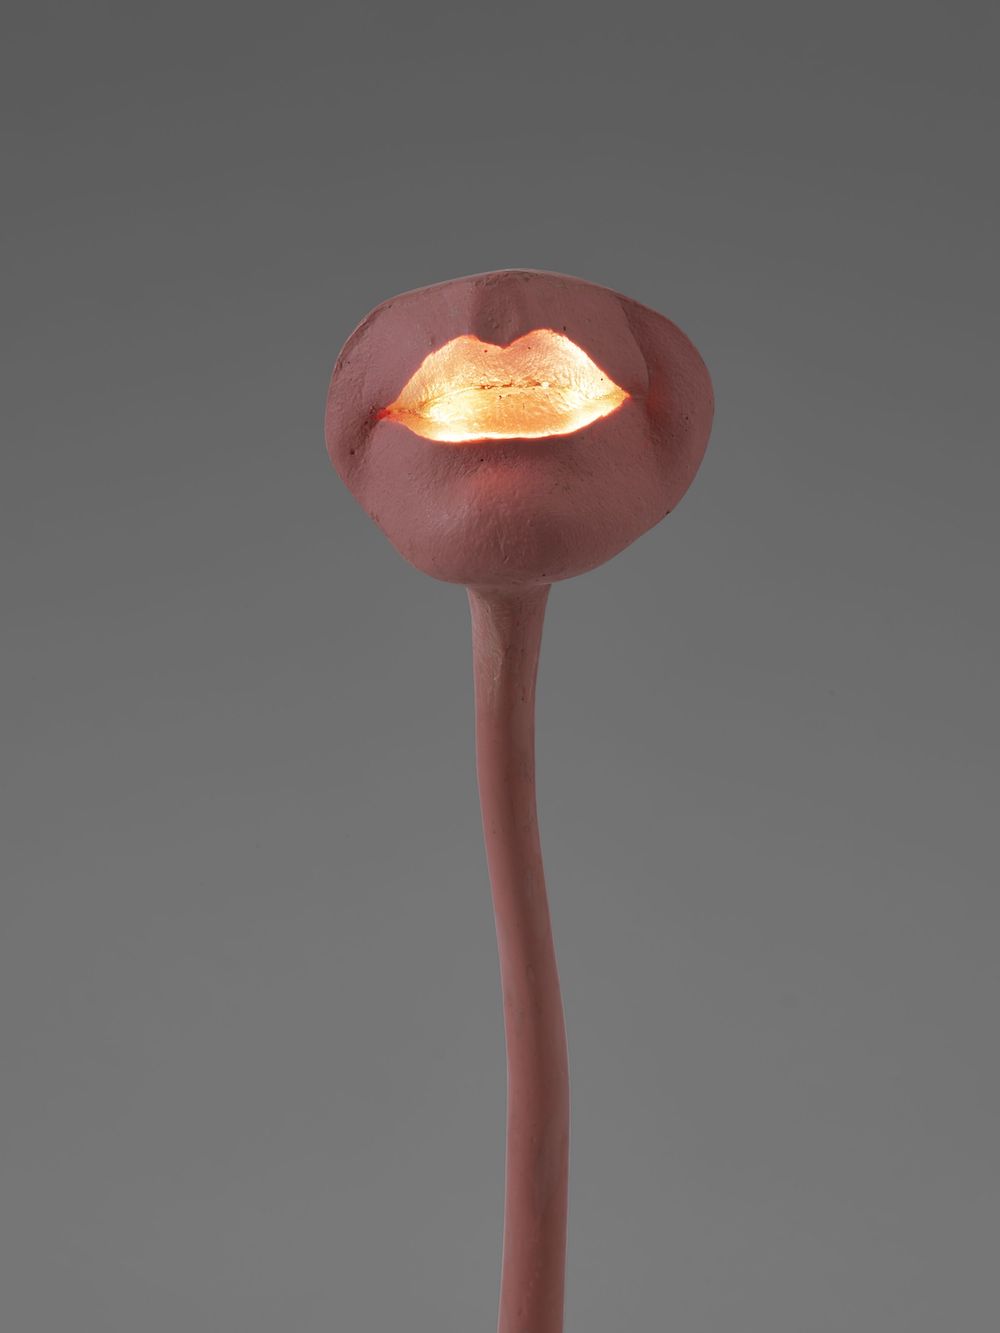 Lampe-bouche (Illuminated Lips) 1966